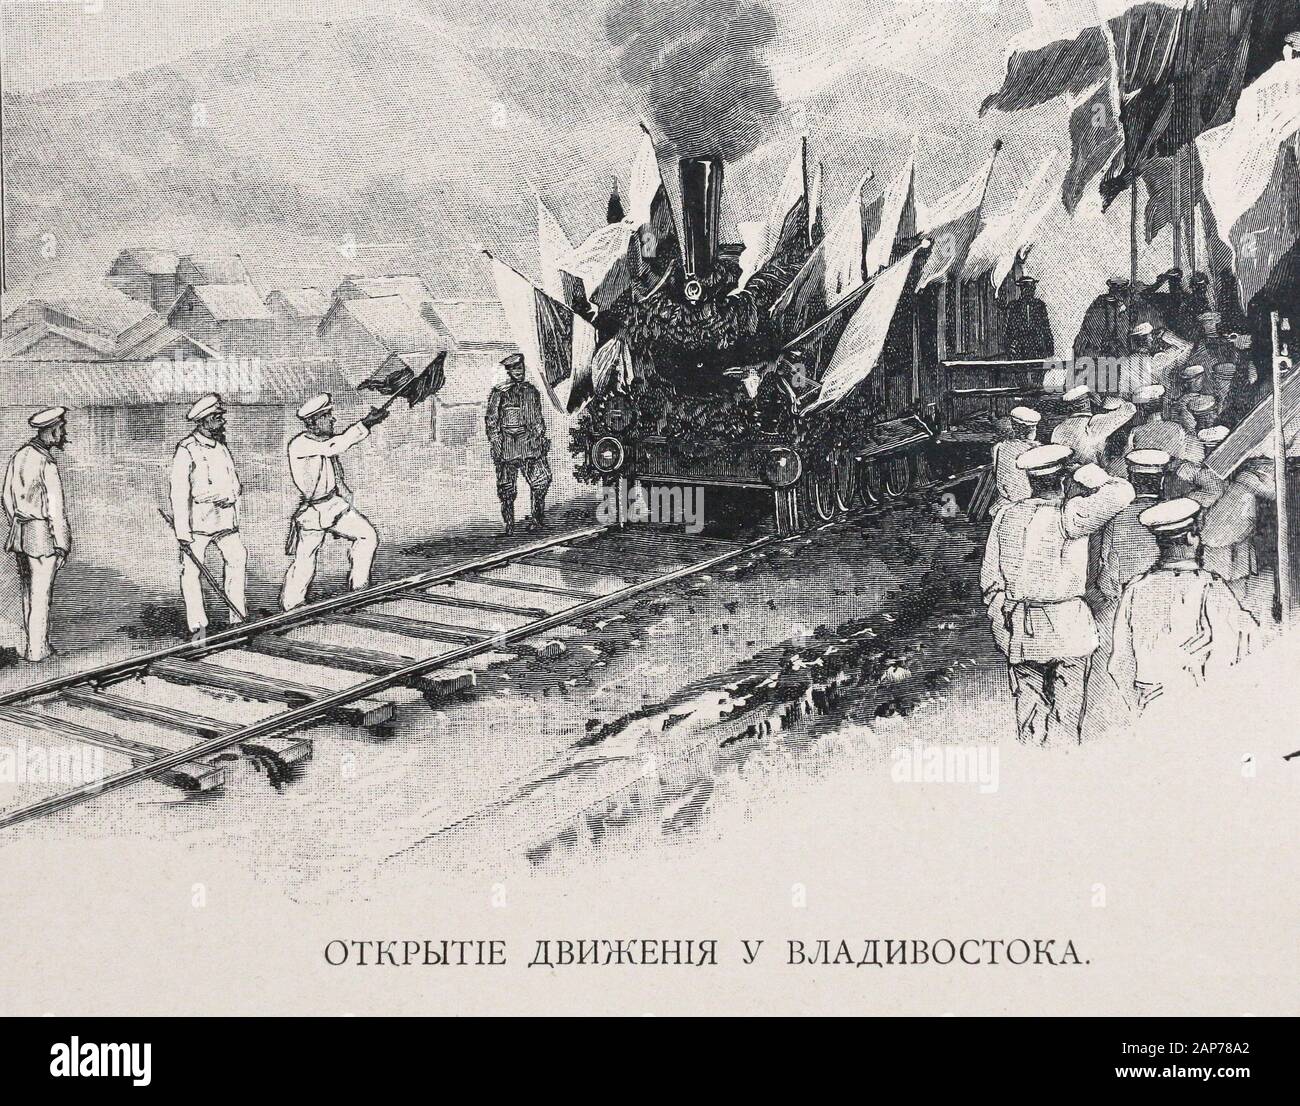 Die Eröffnung des Eisenbahnverkehrs in Wladiwostok. Gravur des 19. Jahrhunderts. Stockfoto